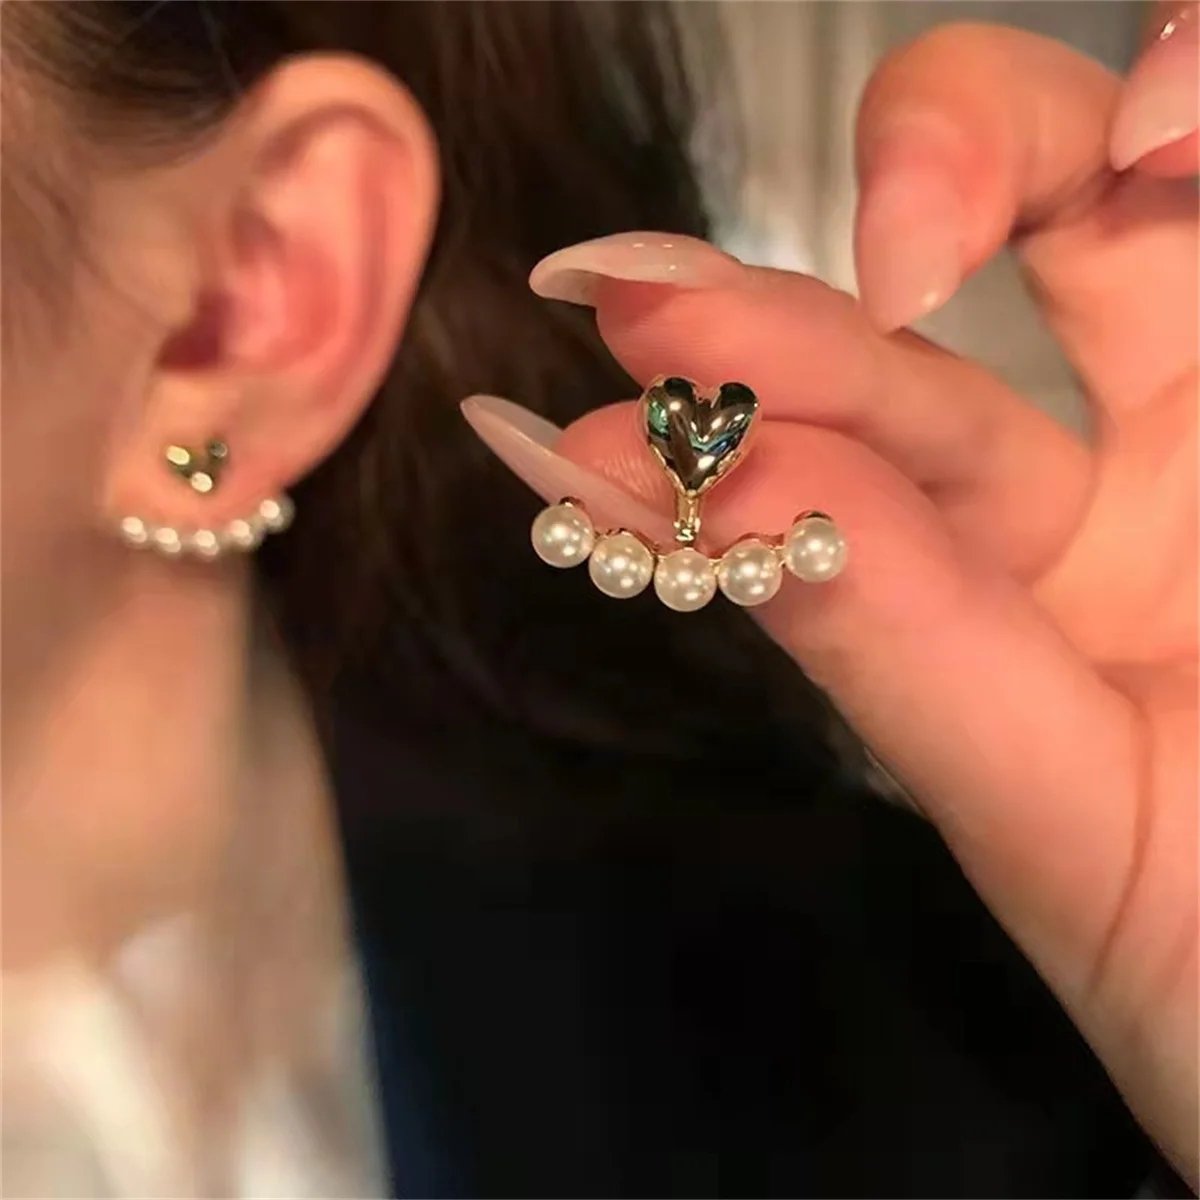 Új Célzat Koreai stílusú szerelmes Szív Gyöngy fülbevaló aranyos virágos strasszos Inggomb fülbevaló számára Nők Megmunkalás ékszer szülinapi ajándékok